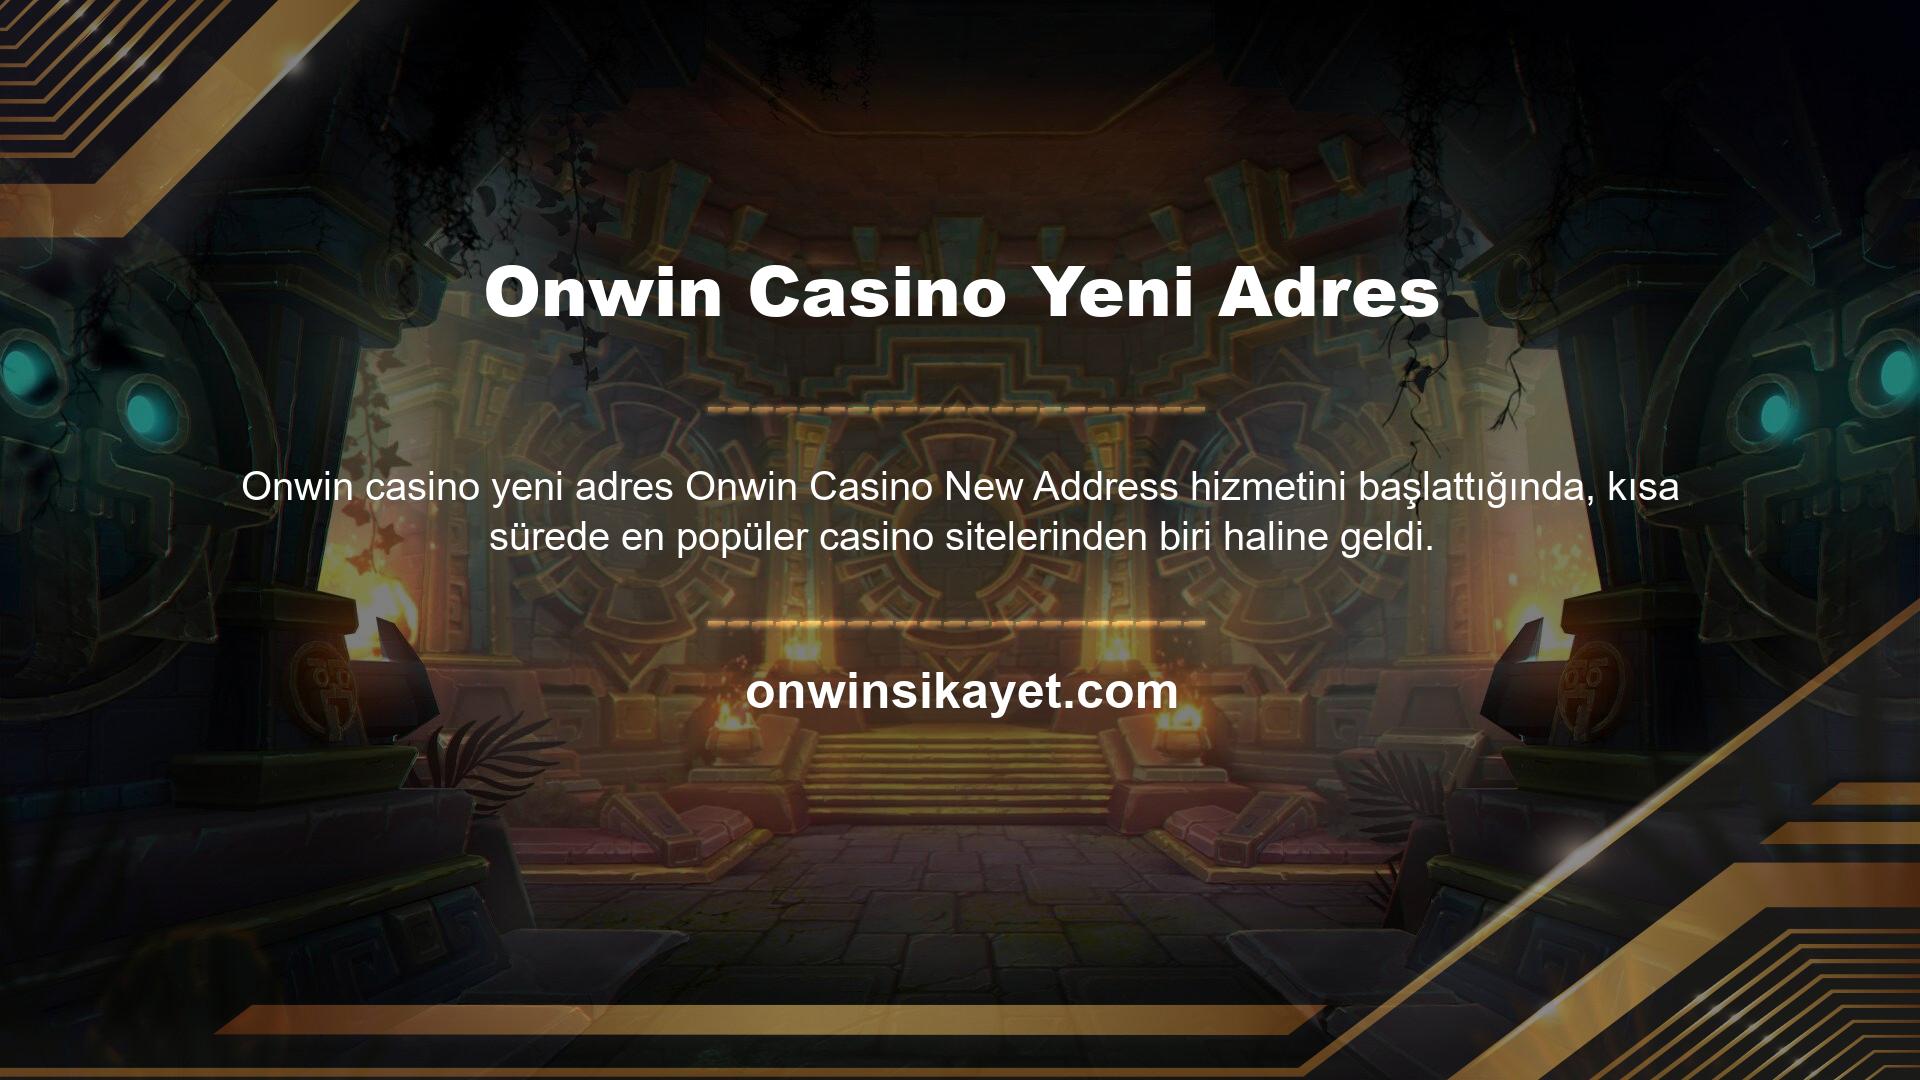 Onwin Casino Yeni Adres